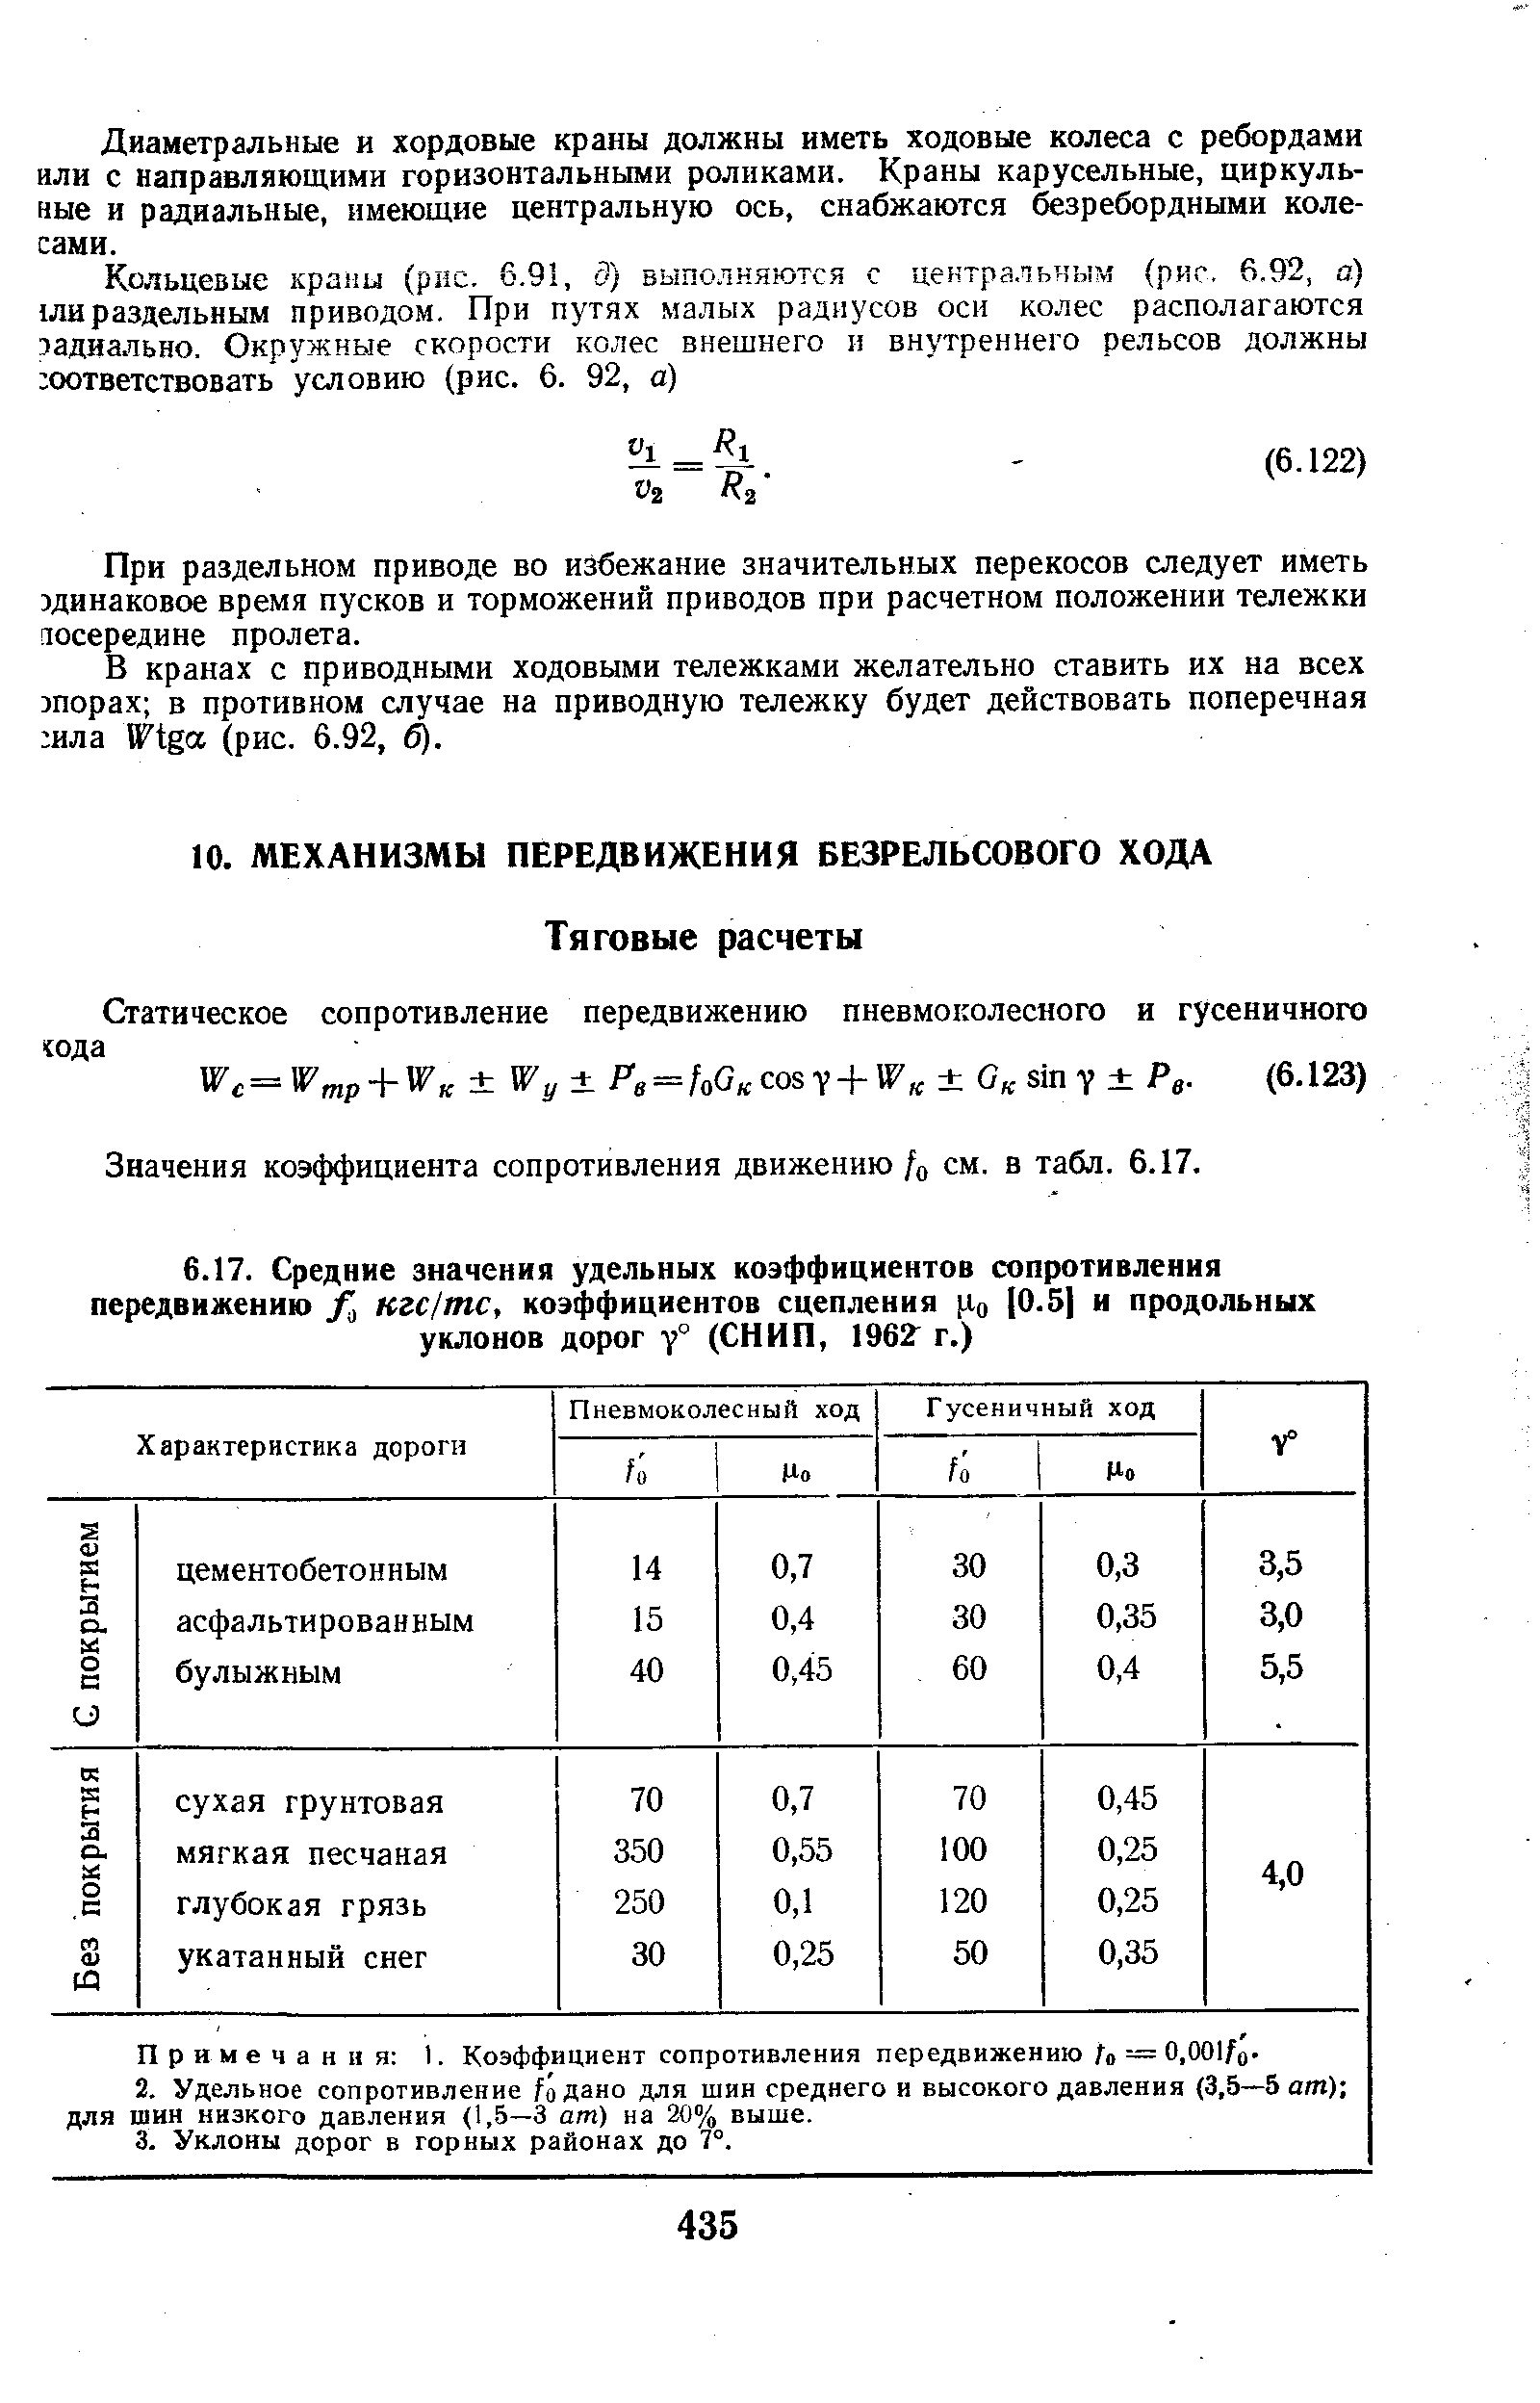 Значения коэффициента сопротивления движению /о см. в табл. 6.17.
